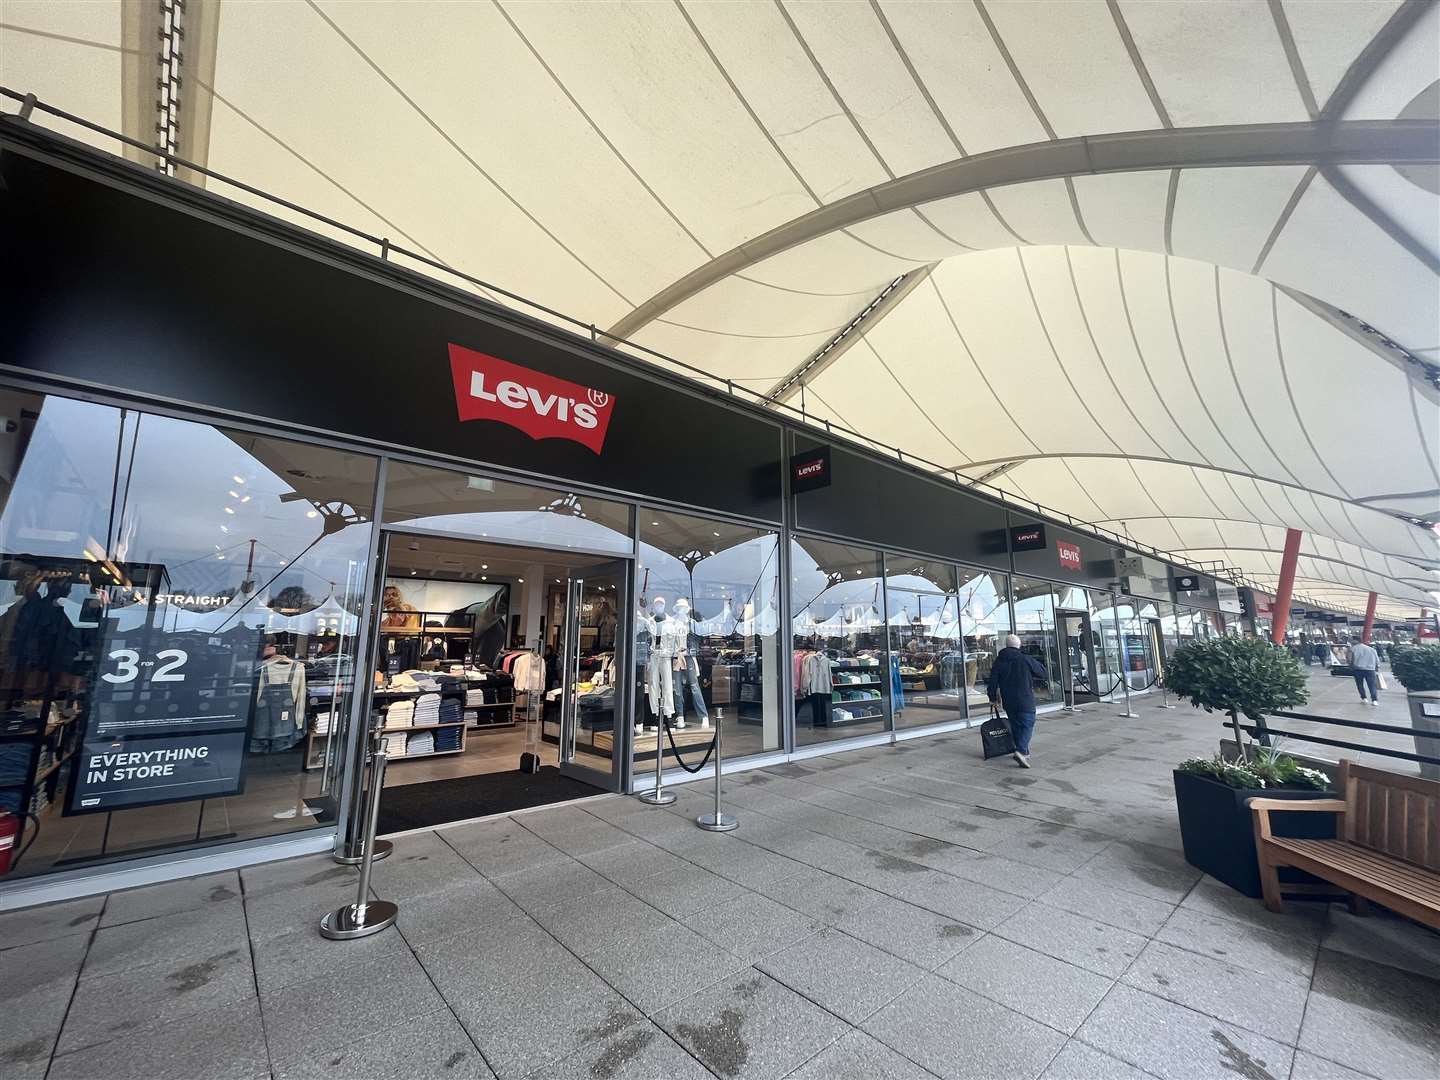 Levi's store at Ashford Designer Outlet expands